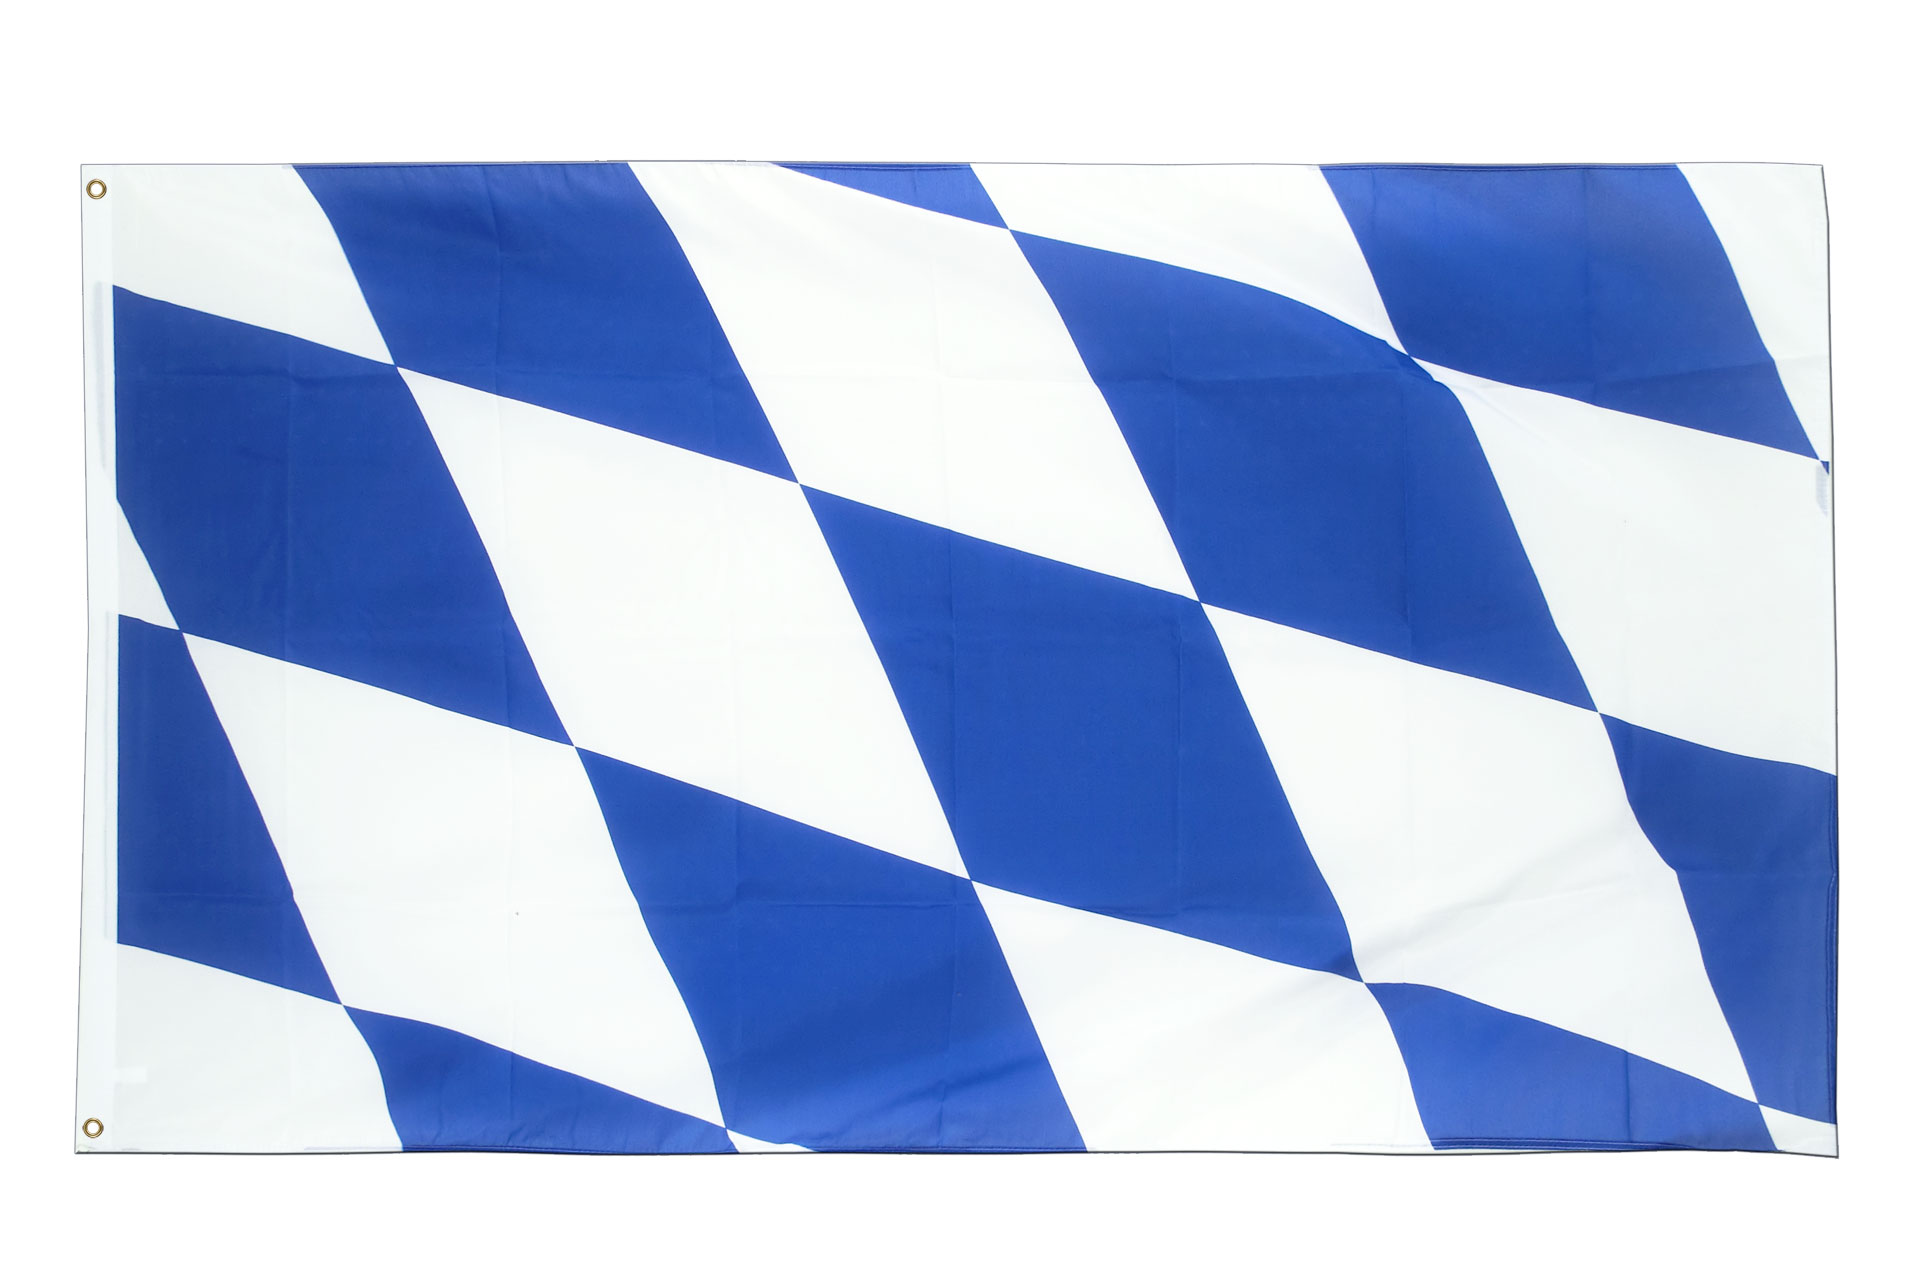 Fahne Flagge Bayern Wappen 1-150 x 250 cm 